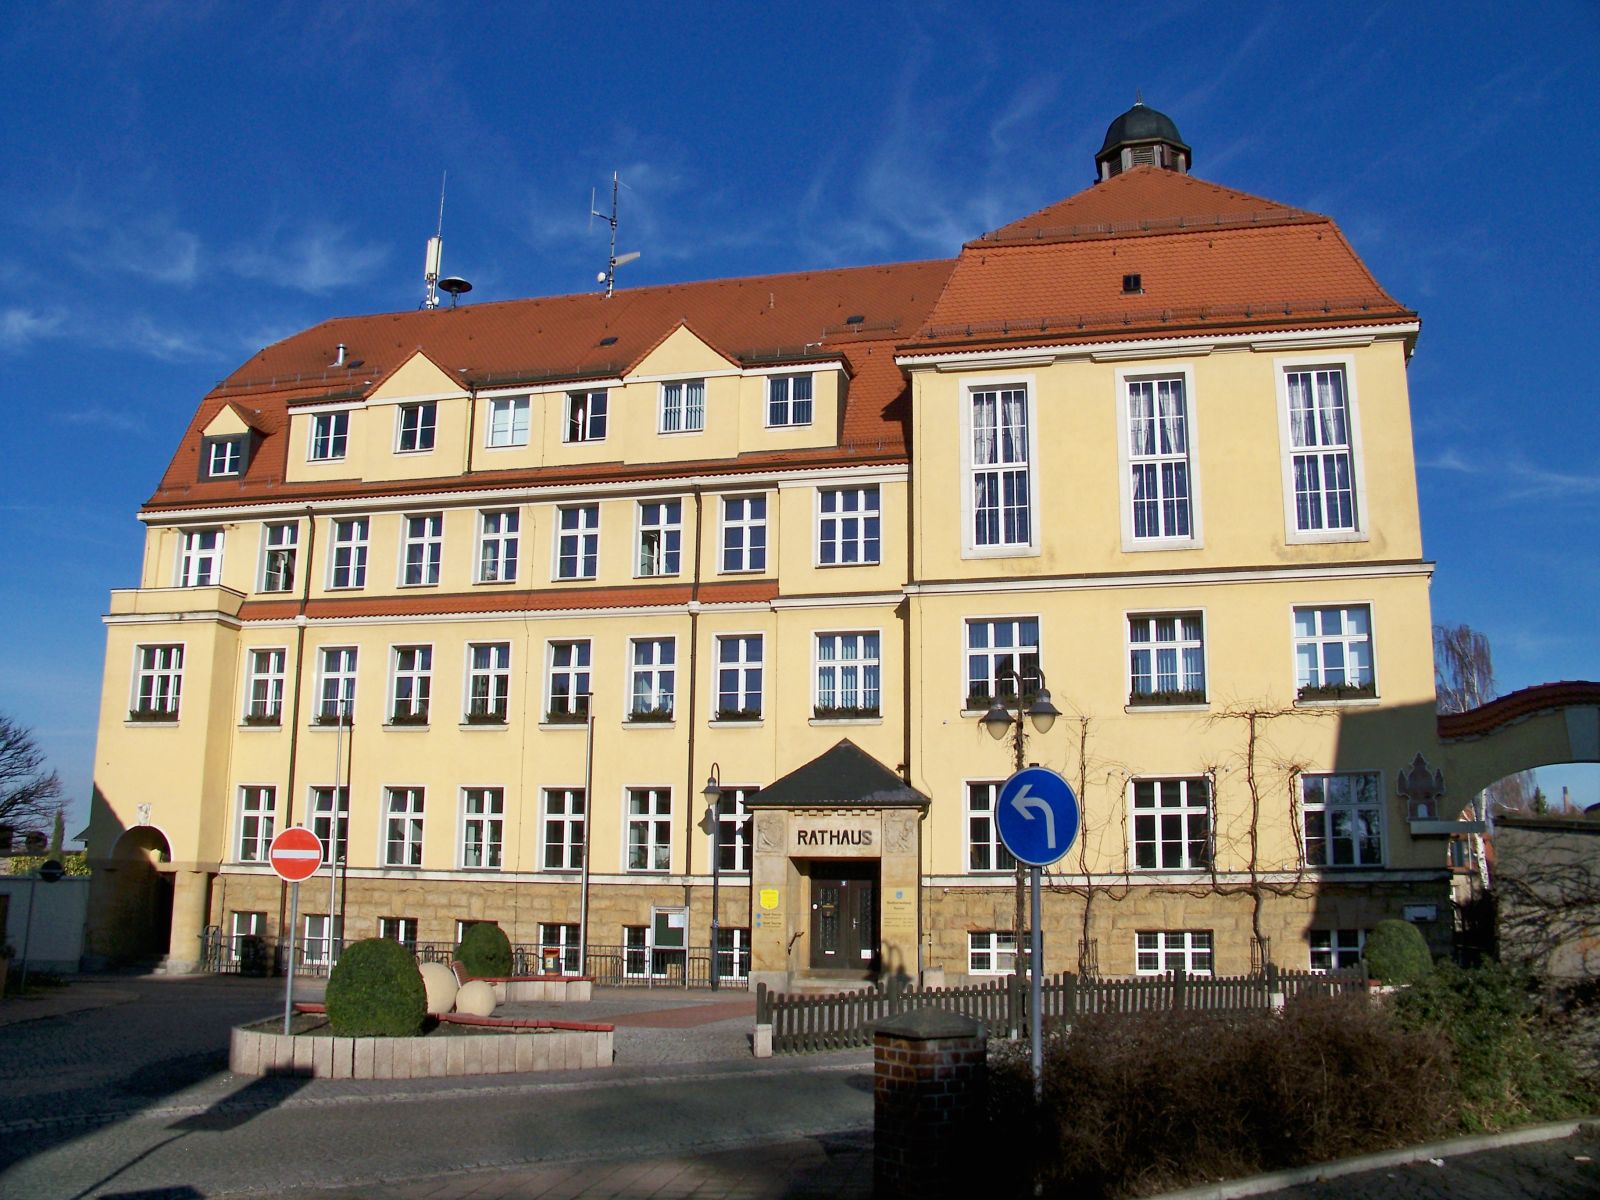 Taucha Rathaus